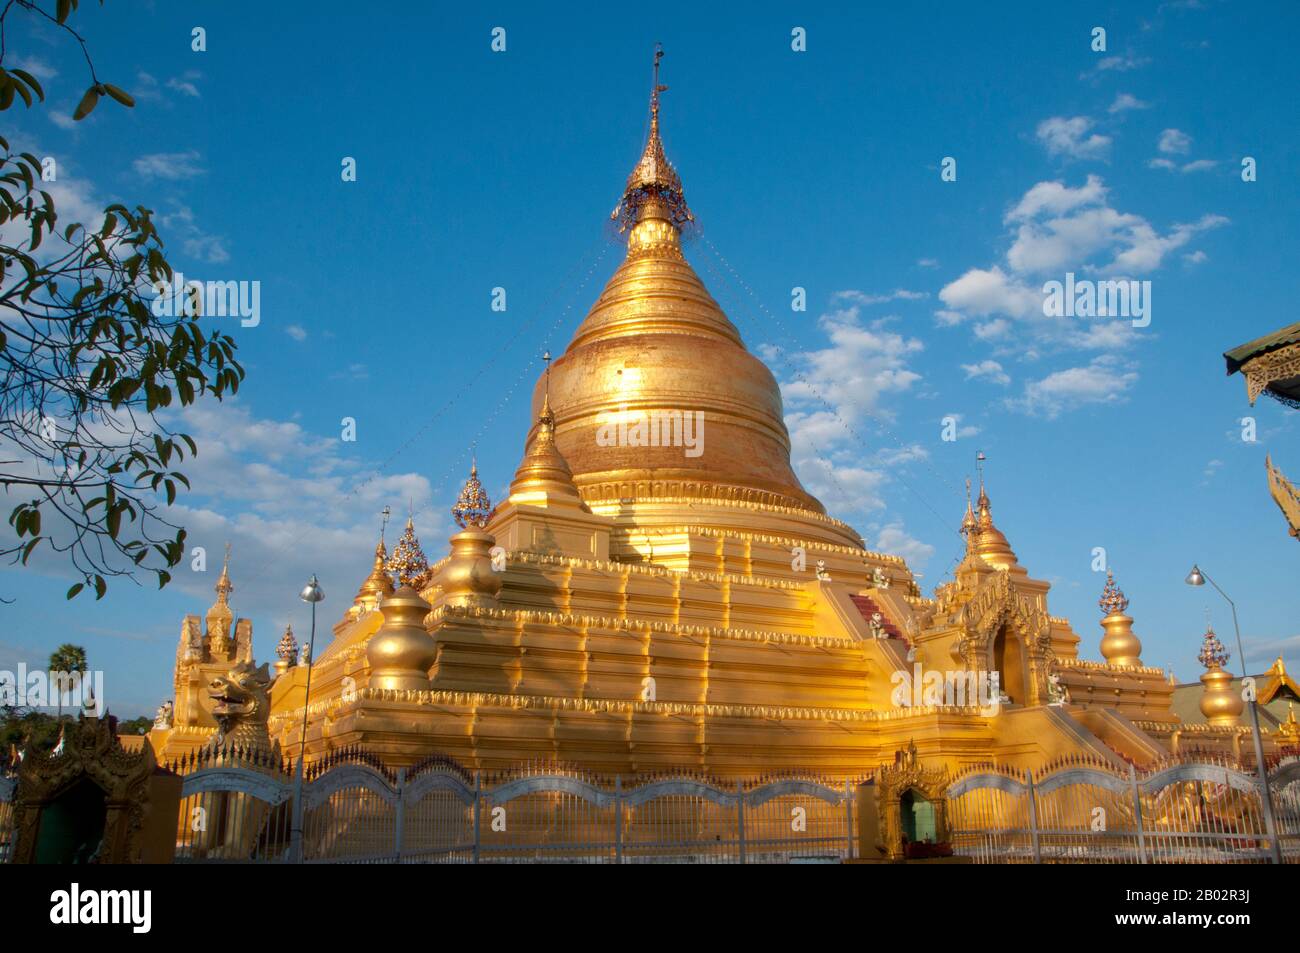 La pagoda de Kuthodaw, literalmente pagoda del merit real, y formalmente llamada Mahalawka Marazein, es un templo budista y una stupa situado en Mandalay, Birmania central. Se encuentra al pie de Mandalay Hill y fue construido durante el reinado del rey Mindon (1808-78). La estupa en sí, que está dorada sobre sus terrazas, tiene 188 m (57 pies) de altura, y está modelada según la pagoda Shwezigon en Nyaung-U cerca de Bagan. En los terrenos de la pagoda se encuentran 729 'kyauksa gu' o cuevas de inscripción de piedra, cada una de ellas con una losa de mármol inscrita en ambos lados con una página de texto del Tipitaka, el canónigo Pali entero de Ther Foto de stock